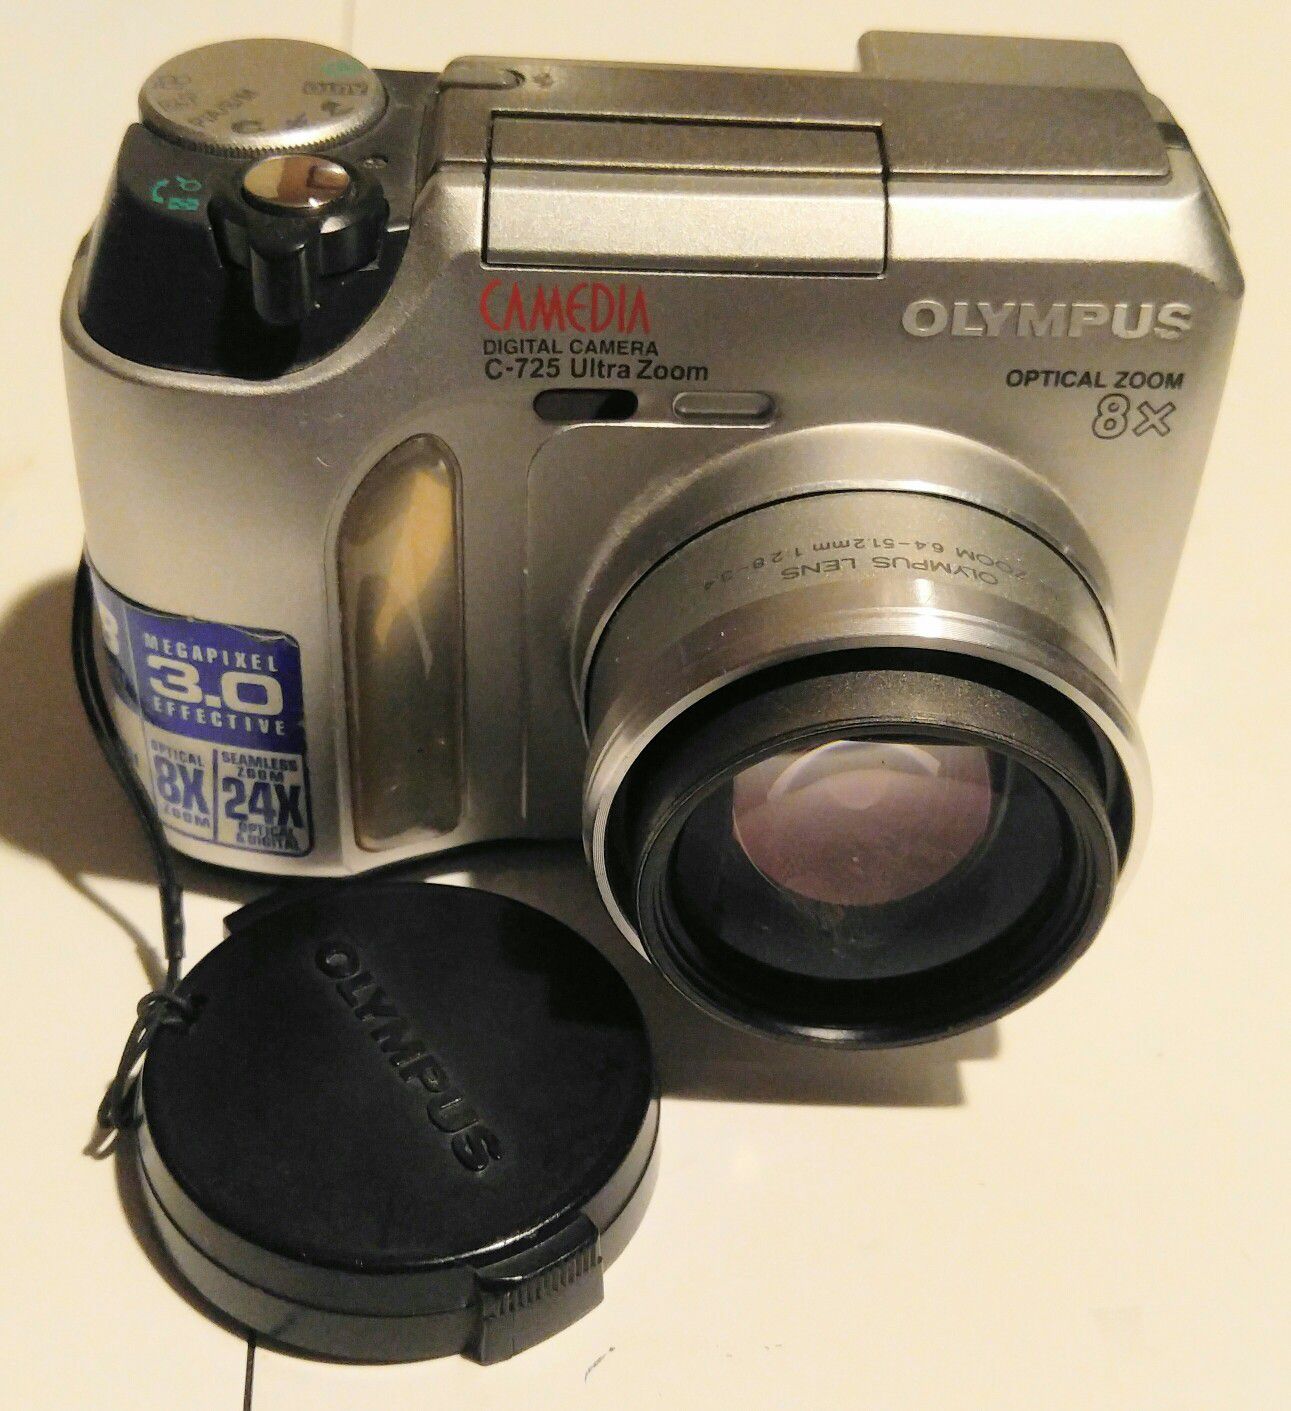 Olympus 3.0 MegaPixels Digital Camera